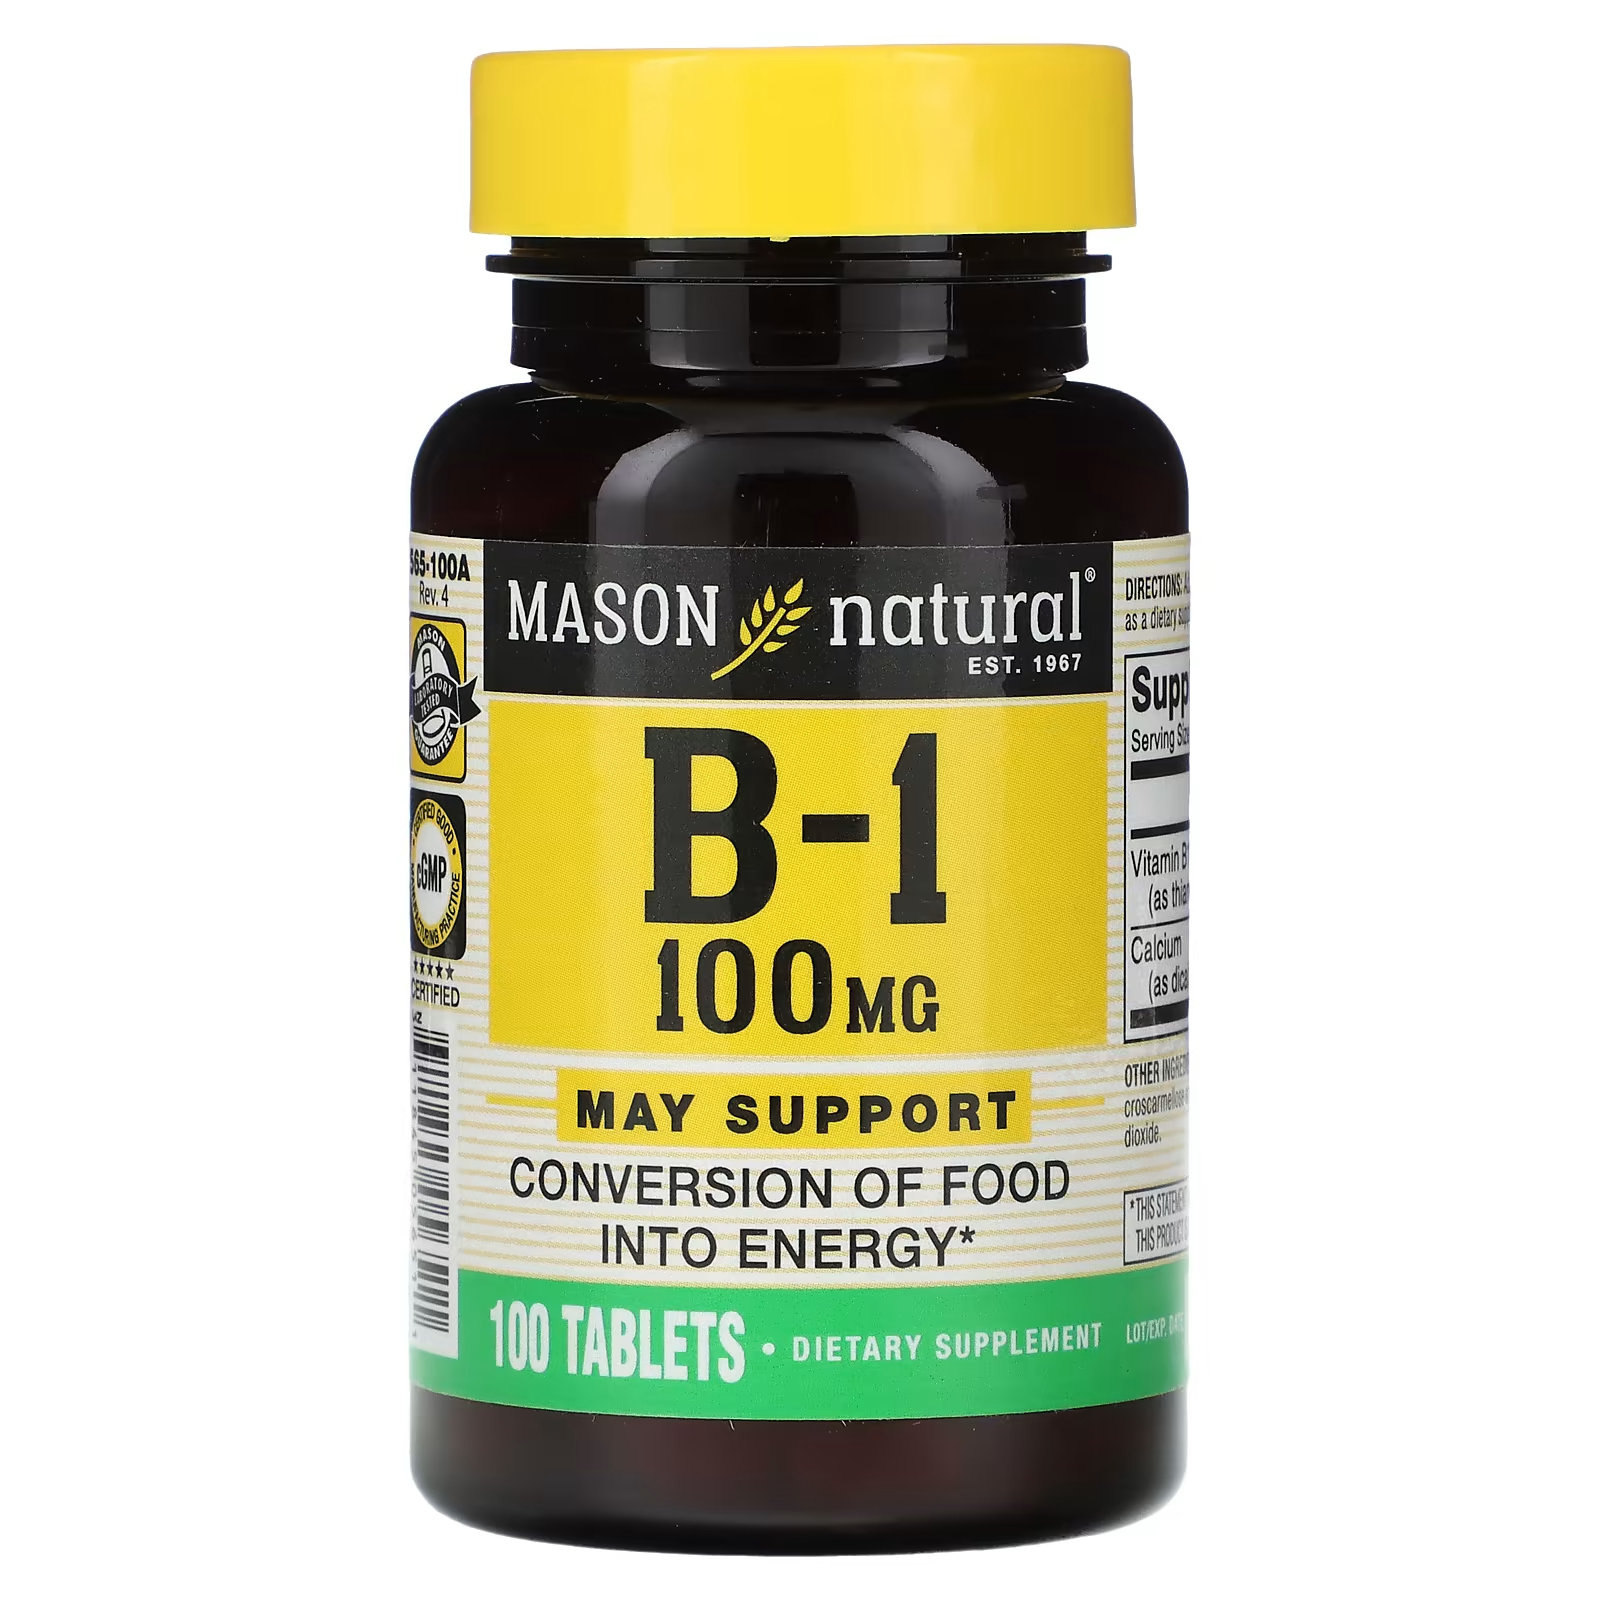 Биологически активная добавка Mason Natural B-1, 100 мг., 100 таблеток mason natural витамин b 1 100 мг 100 таблеток